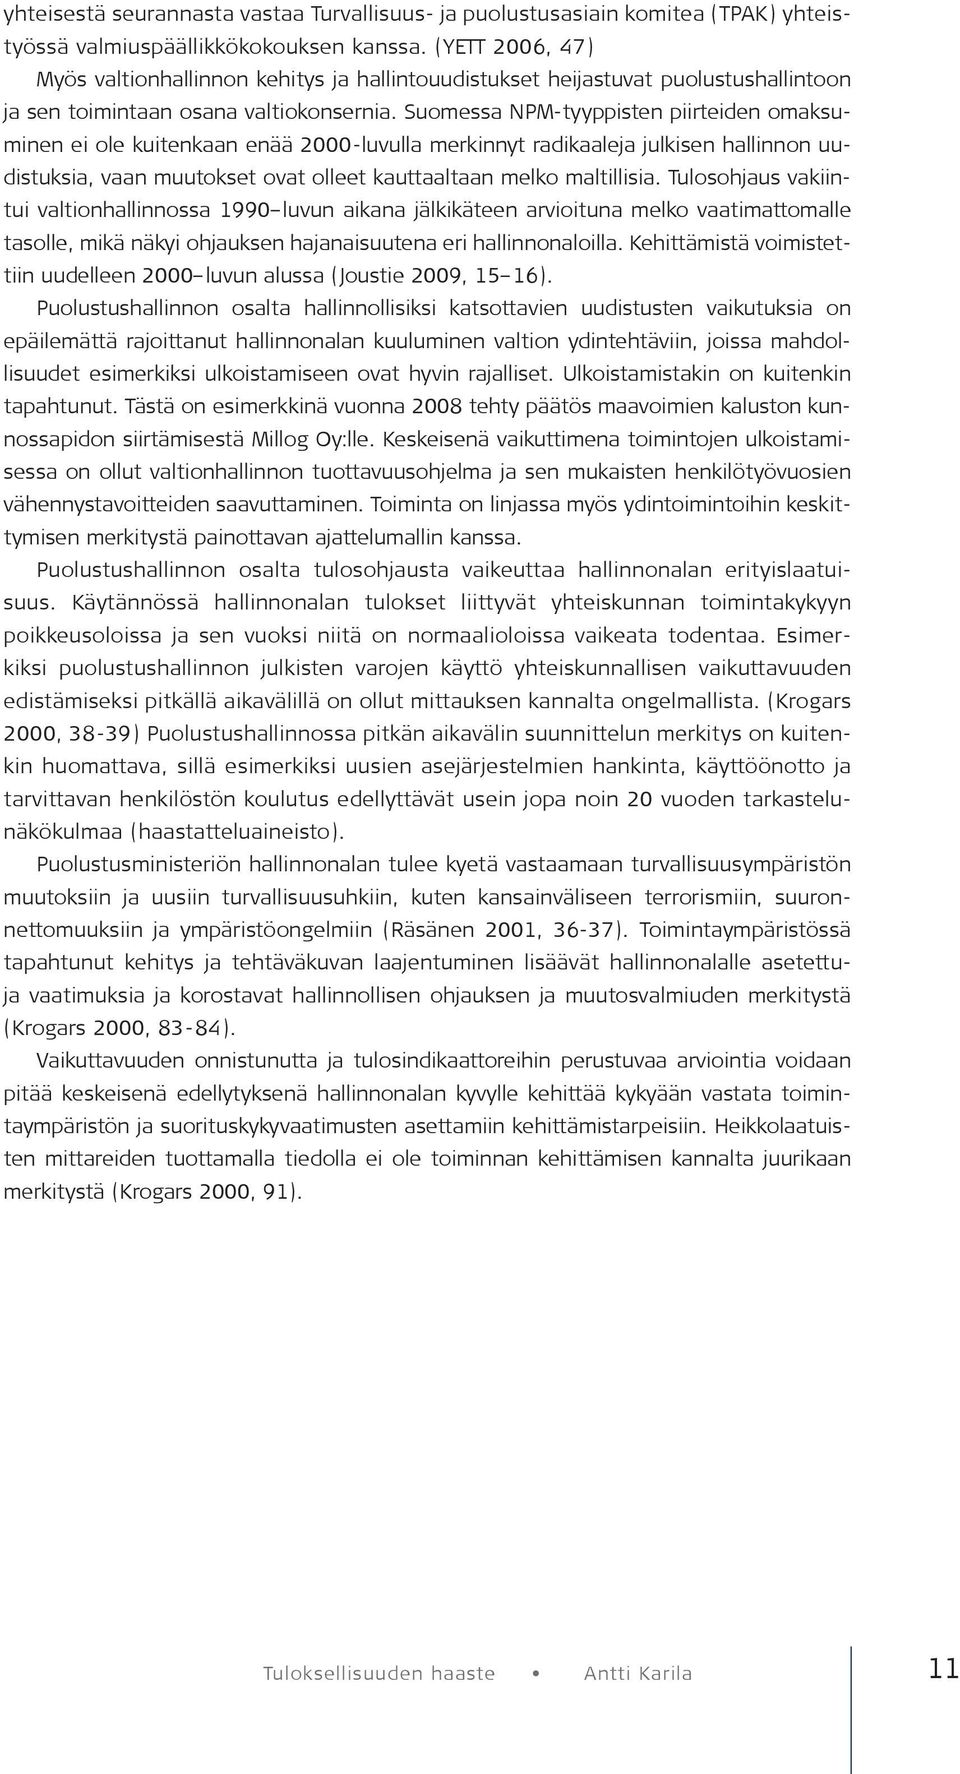 Suomessa NPM-tyyppisten piirteiden omaksuminen ei ole kuitenkaan enää 2000-luvulla merkinnyt radikaaleja julkisen hallinnon uudistuksia, vaan muutokset ovat olleet kauttaaltaan melko maltillisia.